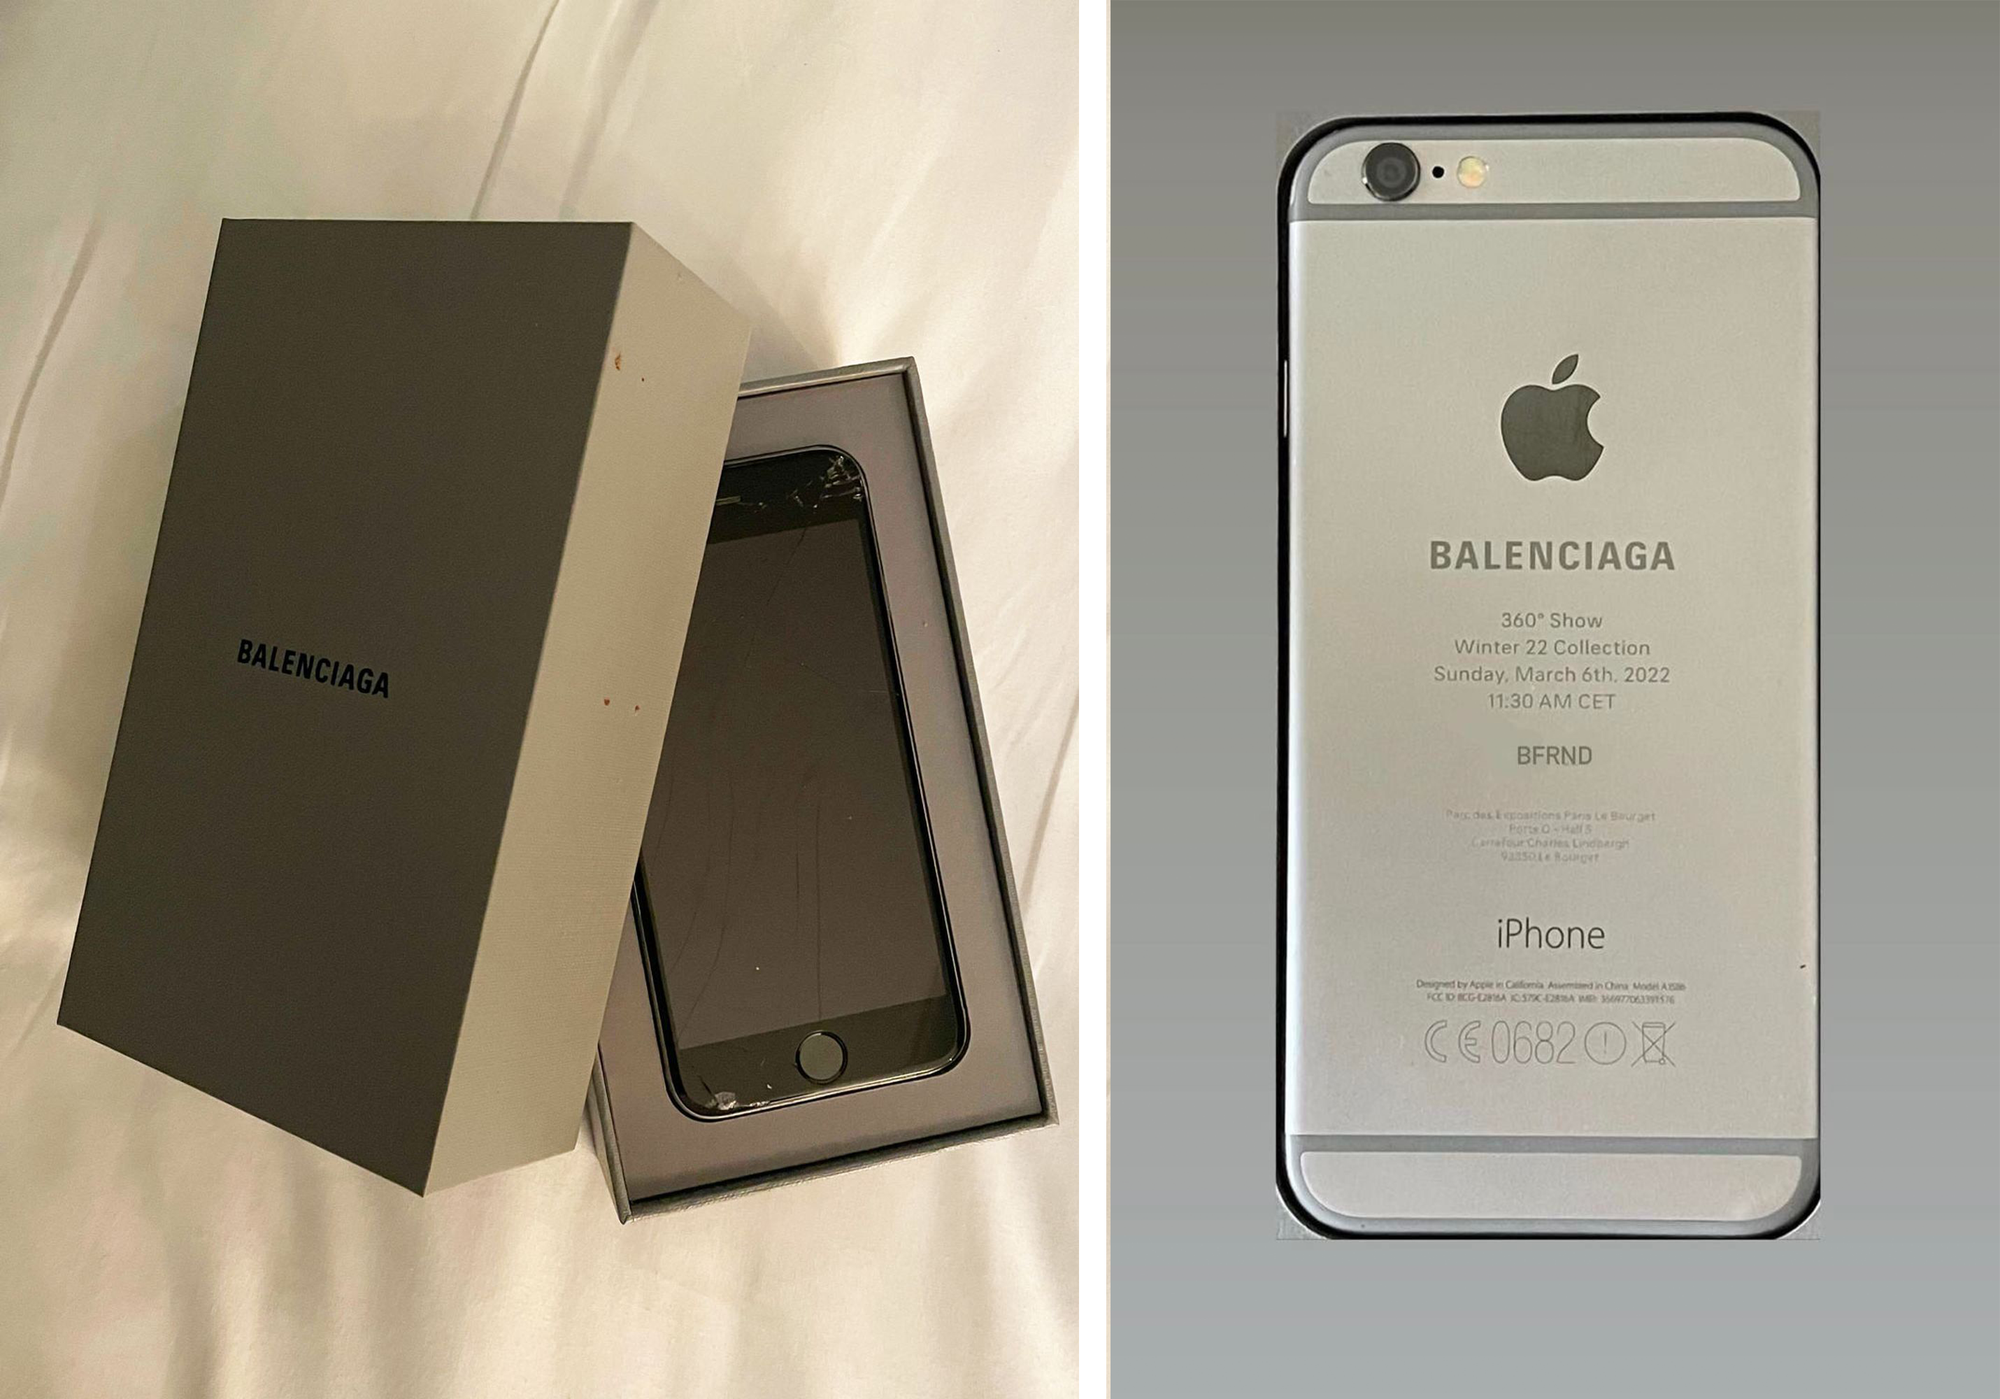 Đăng ký mua sản phẩm của Balenciaga và nhận ngay một chiếc iPhone 6 miễn phí. Đây là một cơ hội tuyệt vời để sở hữu cả một món đồ thời trang cao cấp và một chiếc điện thoại phổ thông đẳng cấp. Hãy xem hình ảnh liên quan đến từ khóa \